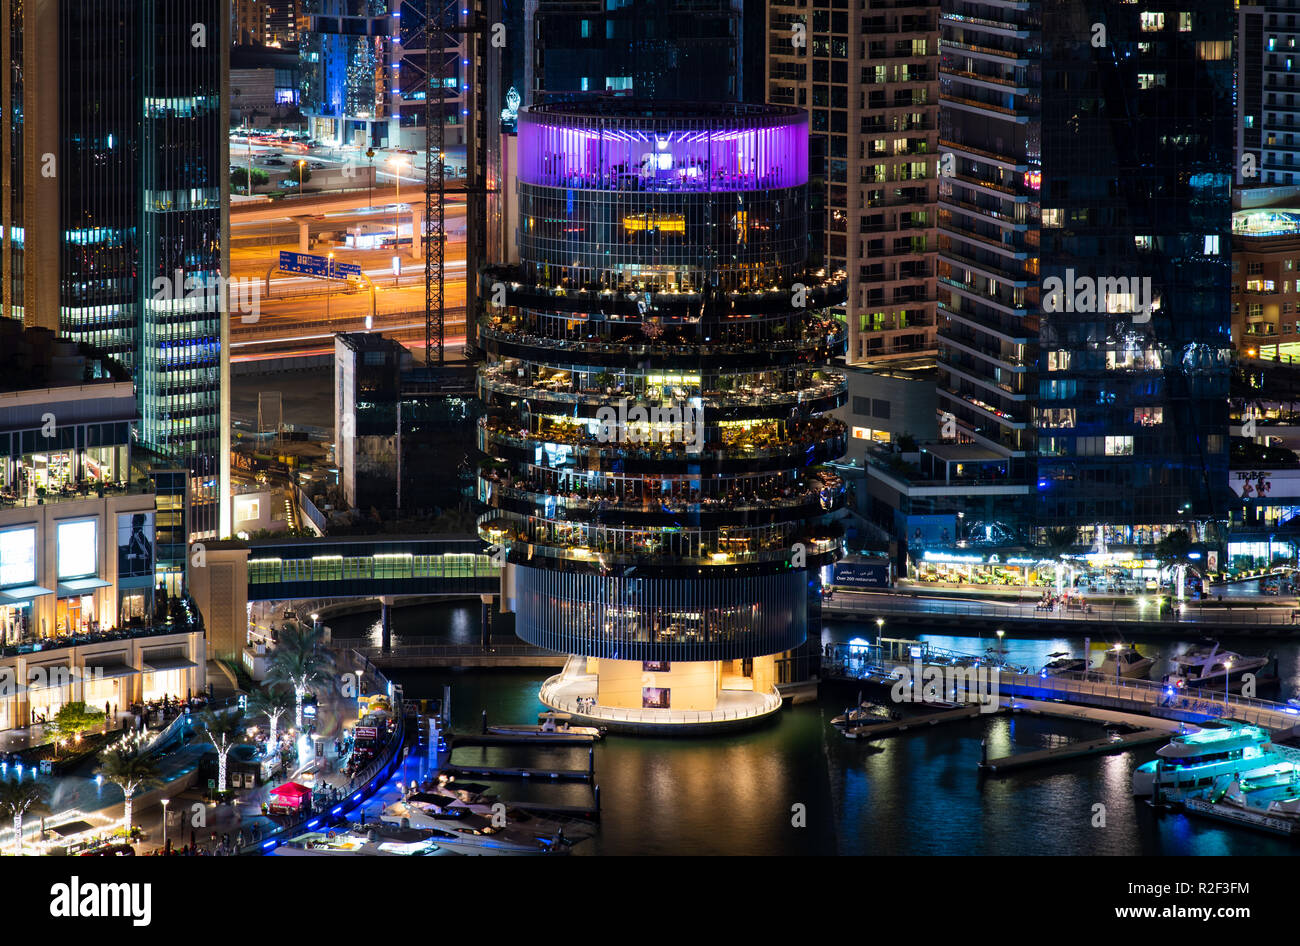 Dubai, Vereinigte Arabische Emirate - November 16, 2018: Pier 7 eine hochwertige Kette von Restaurants an der Dubai Marina Nacht Blick auf berühmte Reiseziel in Du Stockfoto